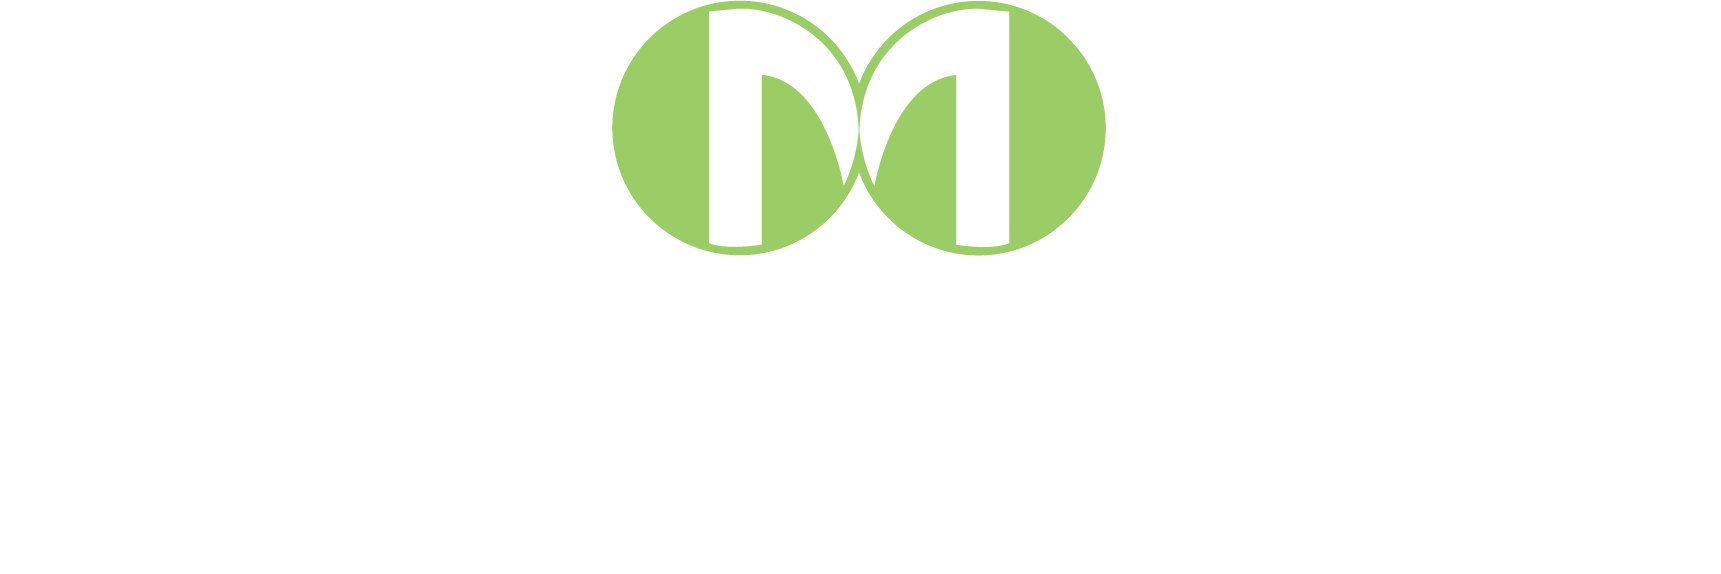 MW logo green_PMS 375-White.png